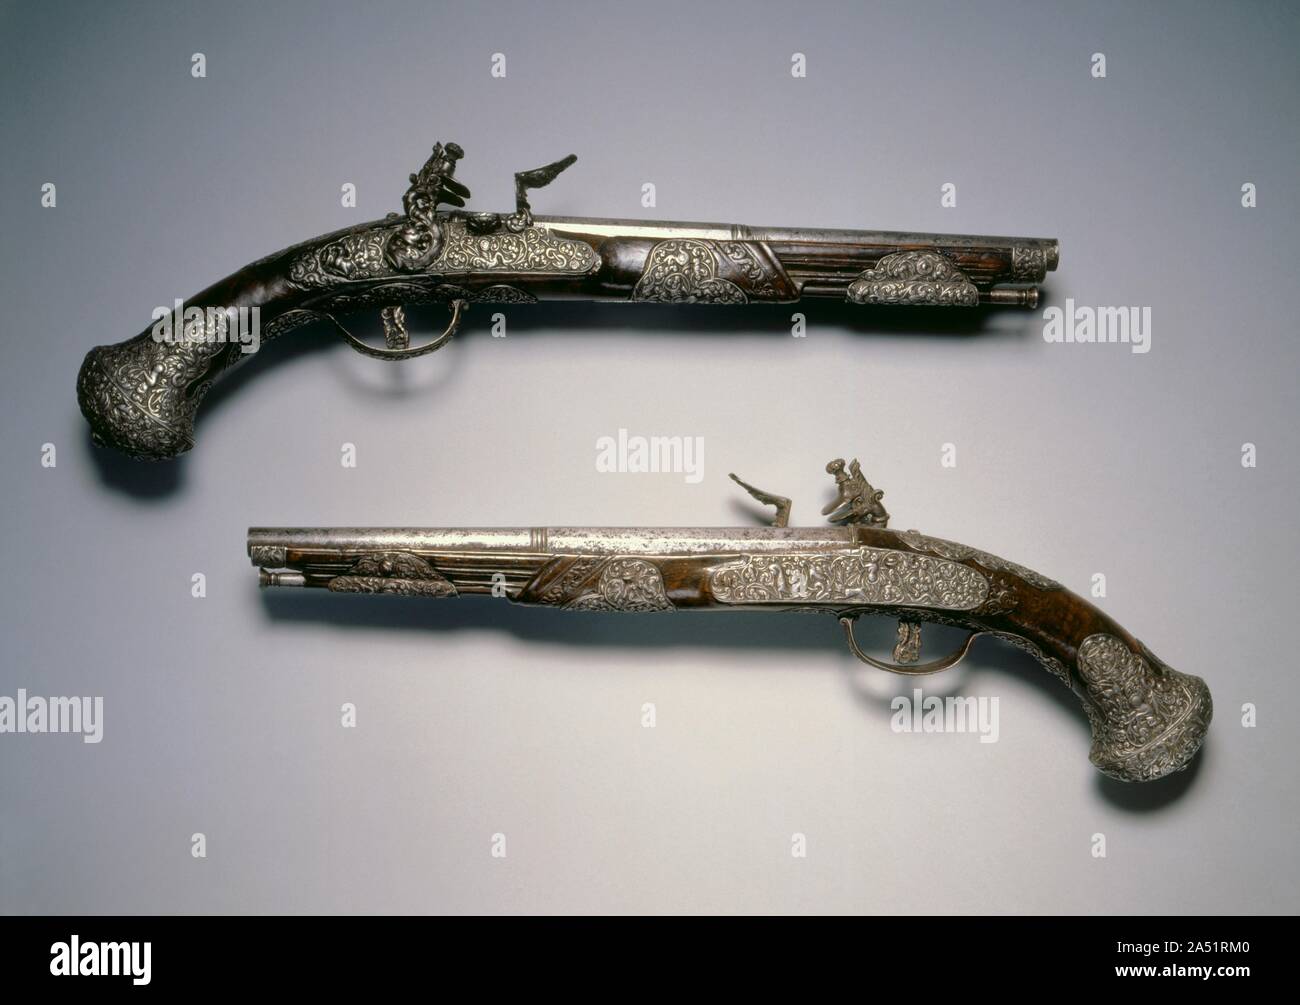 Paar Flintlock Pistolen, C. 1670. Die meißeln von gun Ornament ist eine Aufgabe vergleichbar mit Skulptur im Miniaturformat, in ein extrem hartes Material durchgeführt. Da es sich in der Regel über die Fähigkeit der meisten büchsenmachern, war es nicht ungewöhnlich, dass solche Arbeiten vergeben wie hier aufgetreten zu sein. Stockfoto